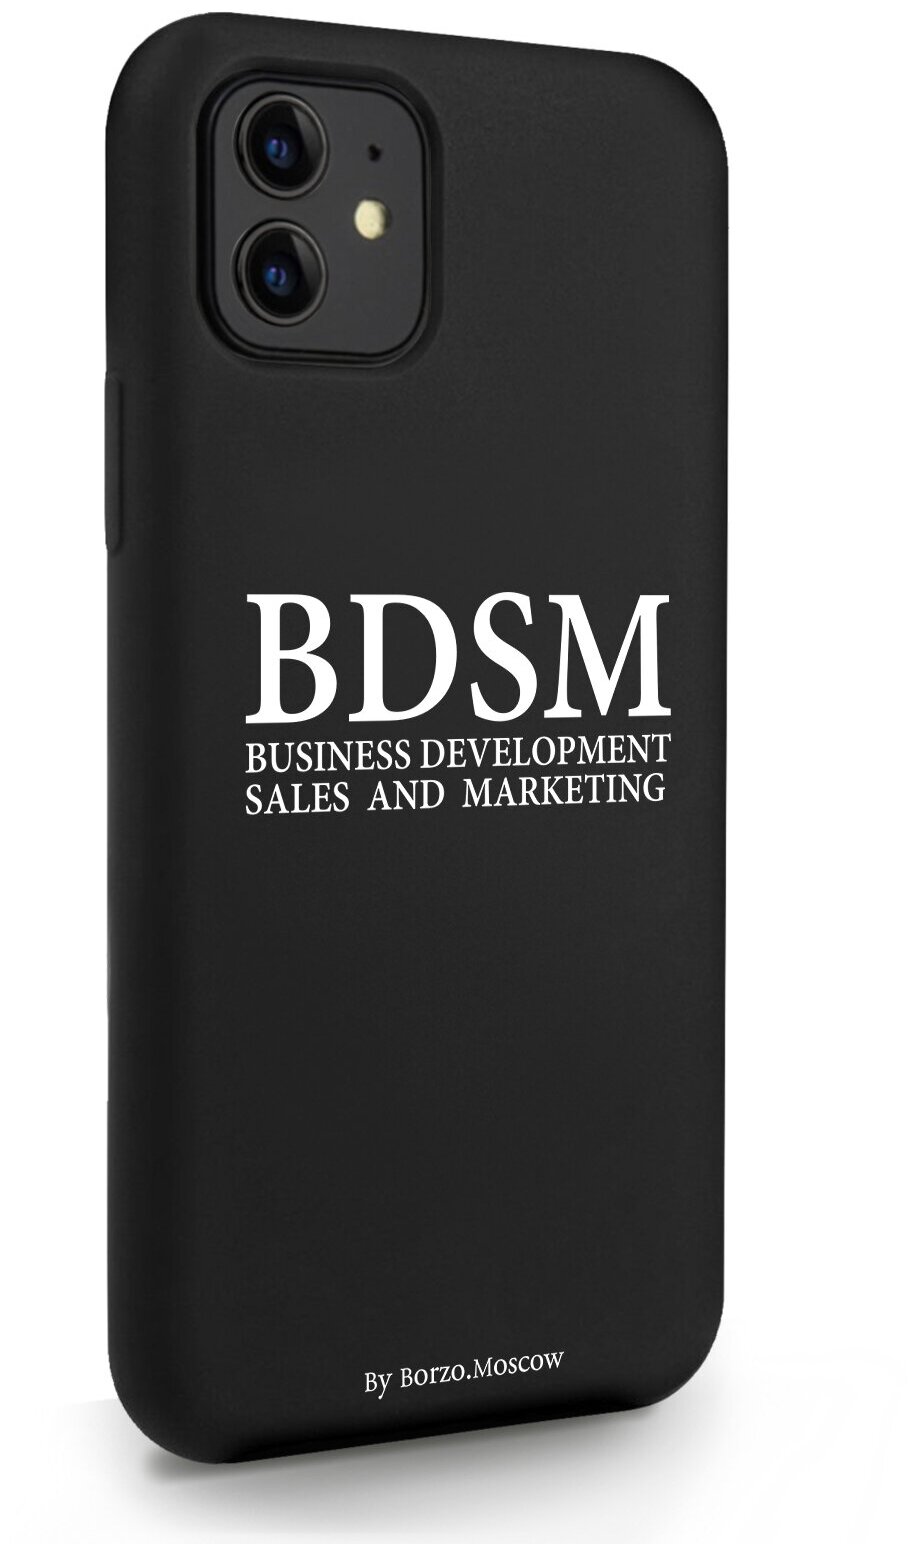 Черный силиконовый чехол Borzo.Moscow для iPhone 11 BDSM (business development sales and marketing) для Айфон 11